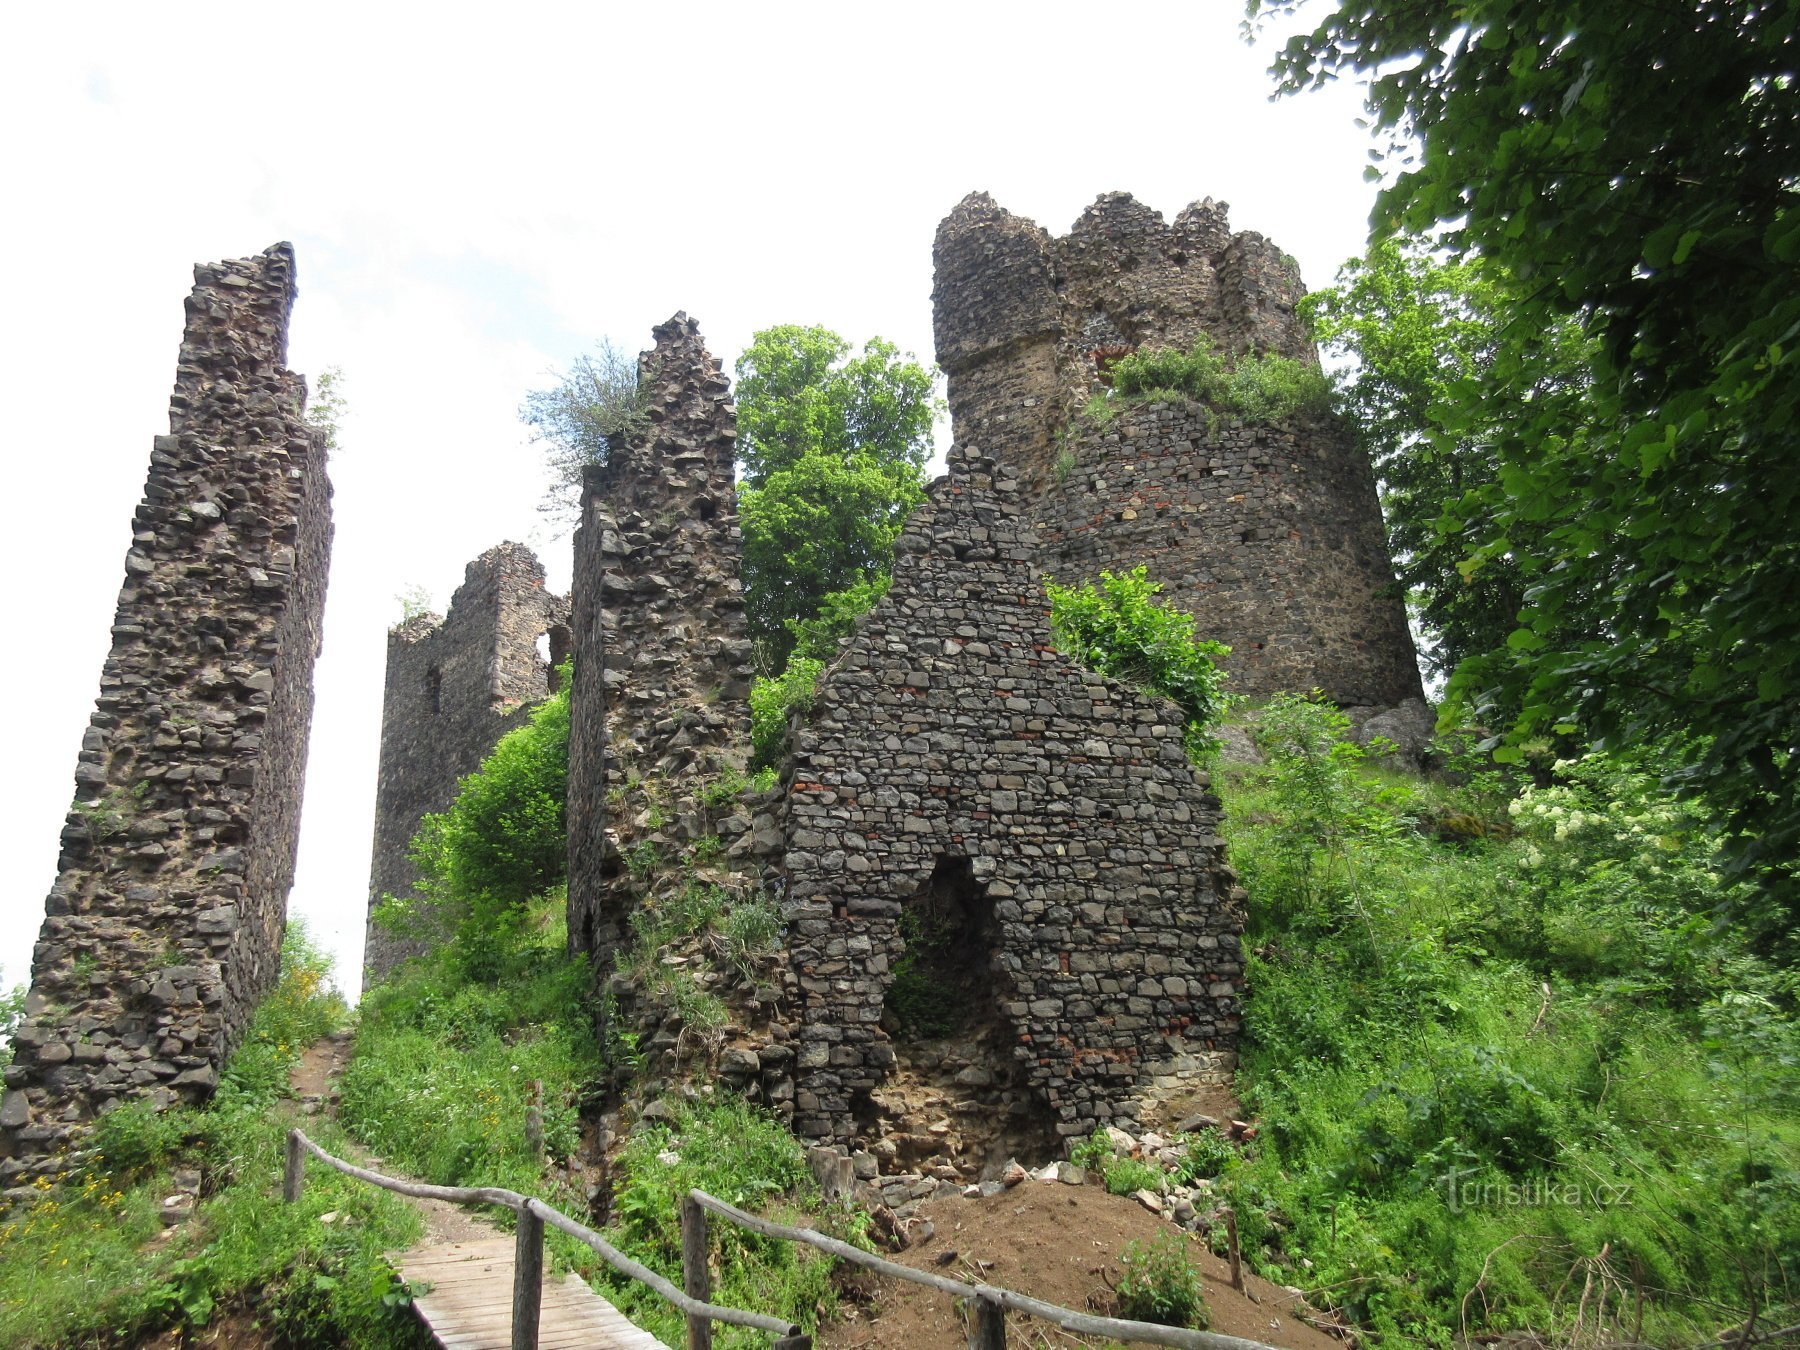 Erster Blick auf die Ruine mit dem Rundturm